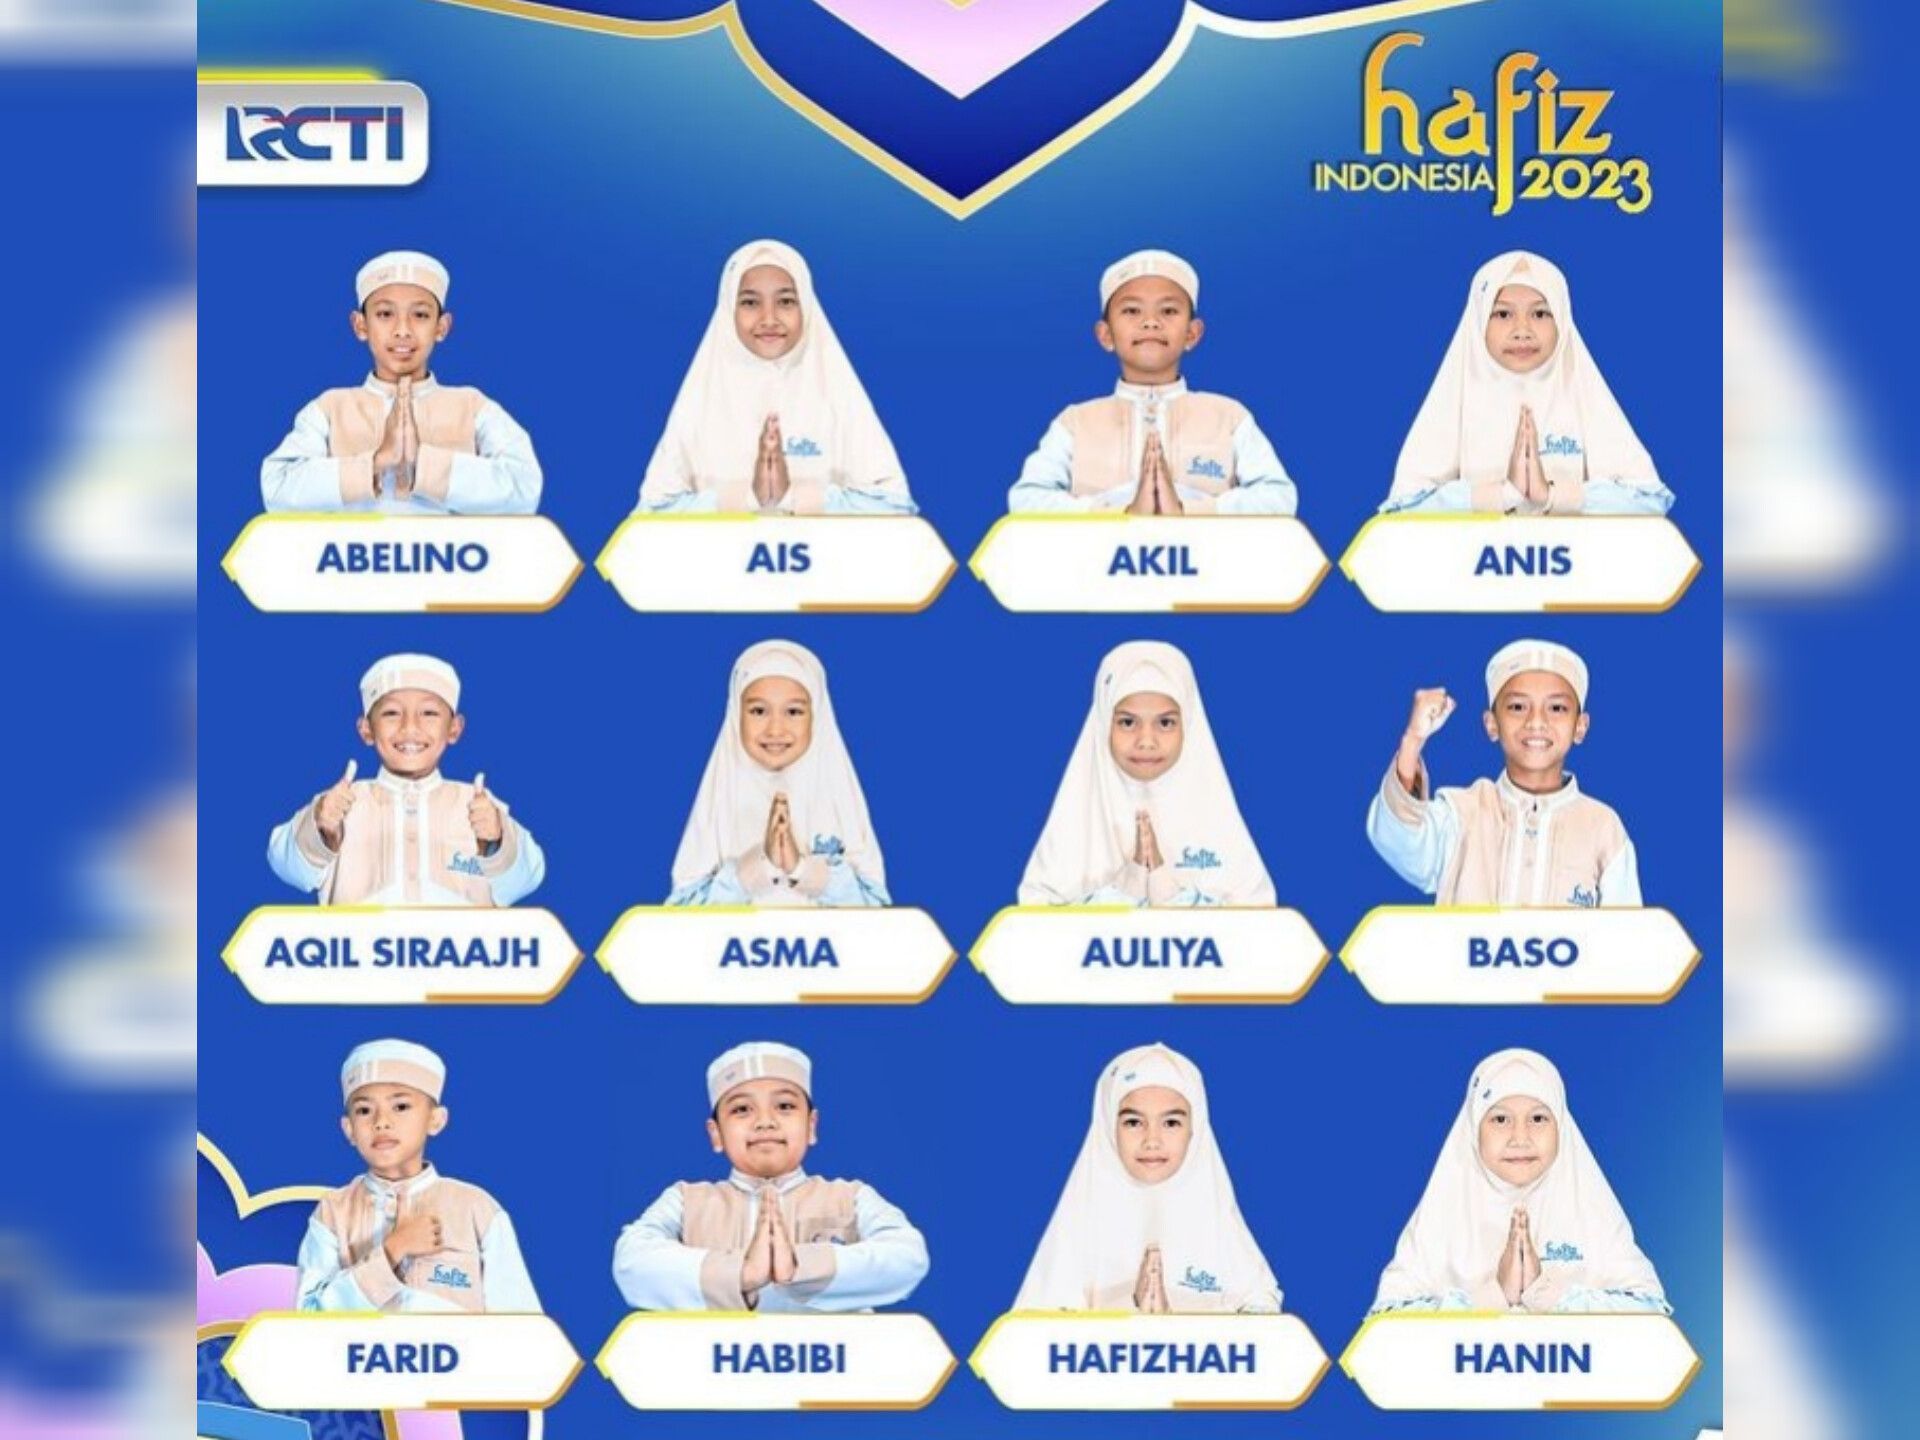 Jadwal acara RCTI hari ini, Sabtu 1 April 2023, saksikan Hafiz Indonesia 2023